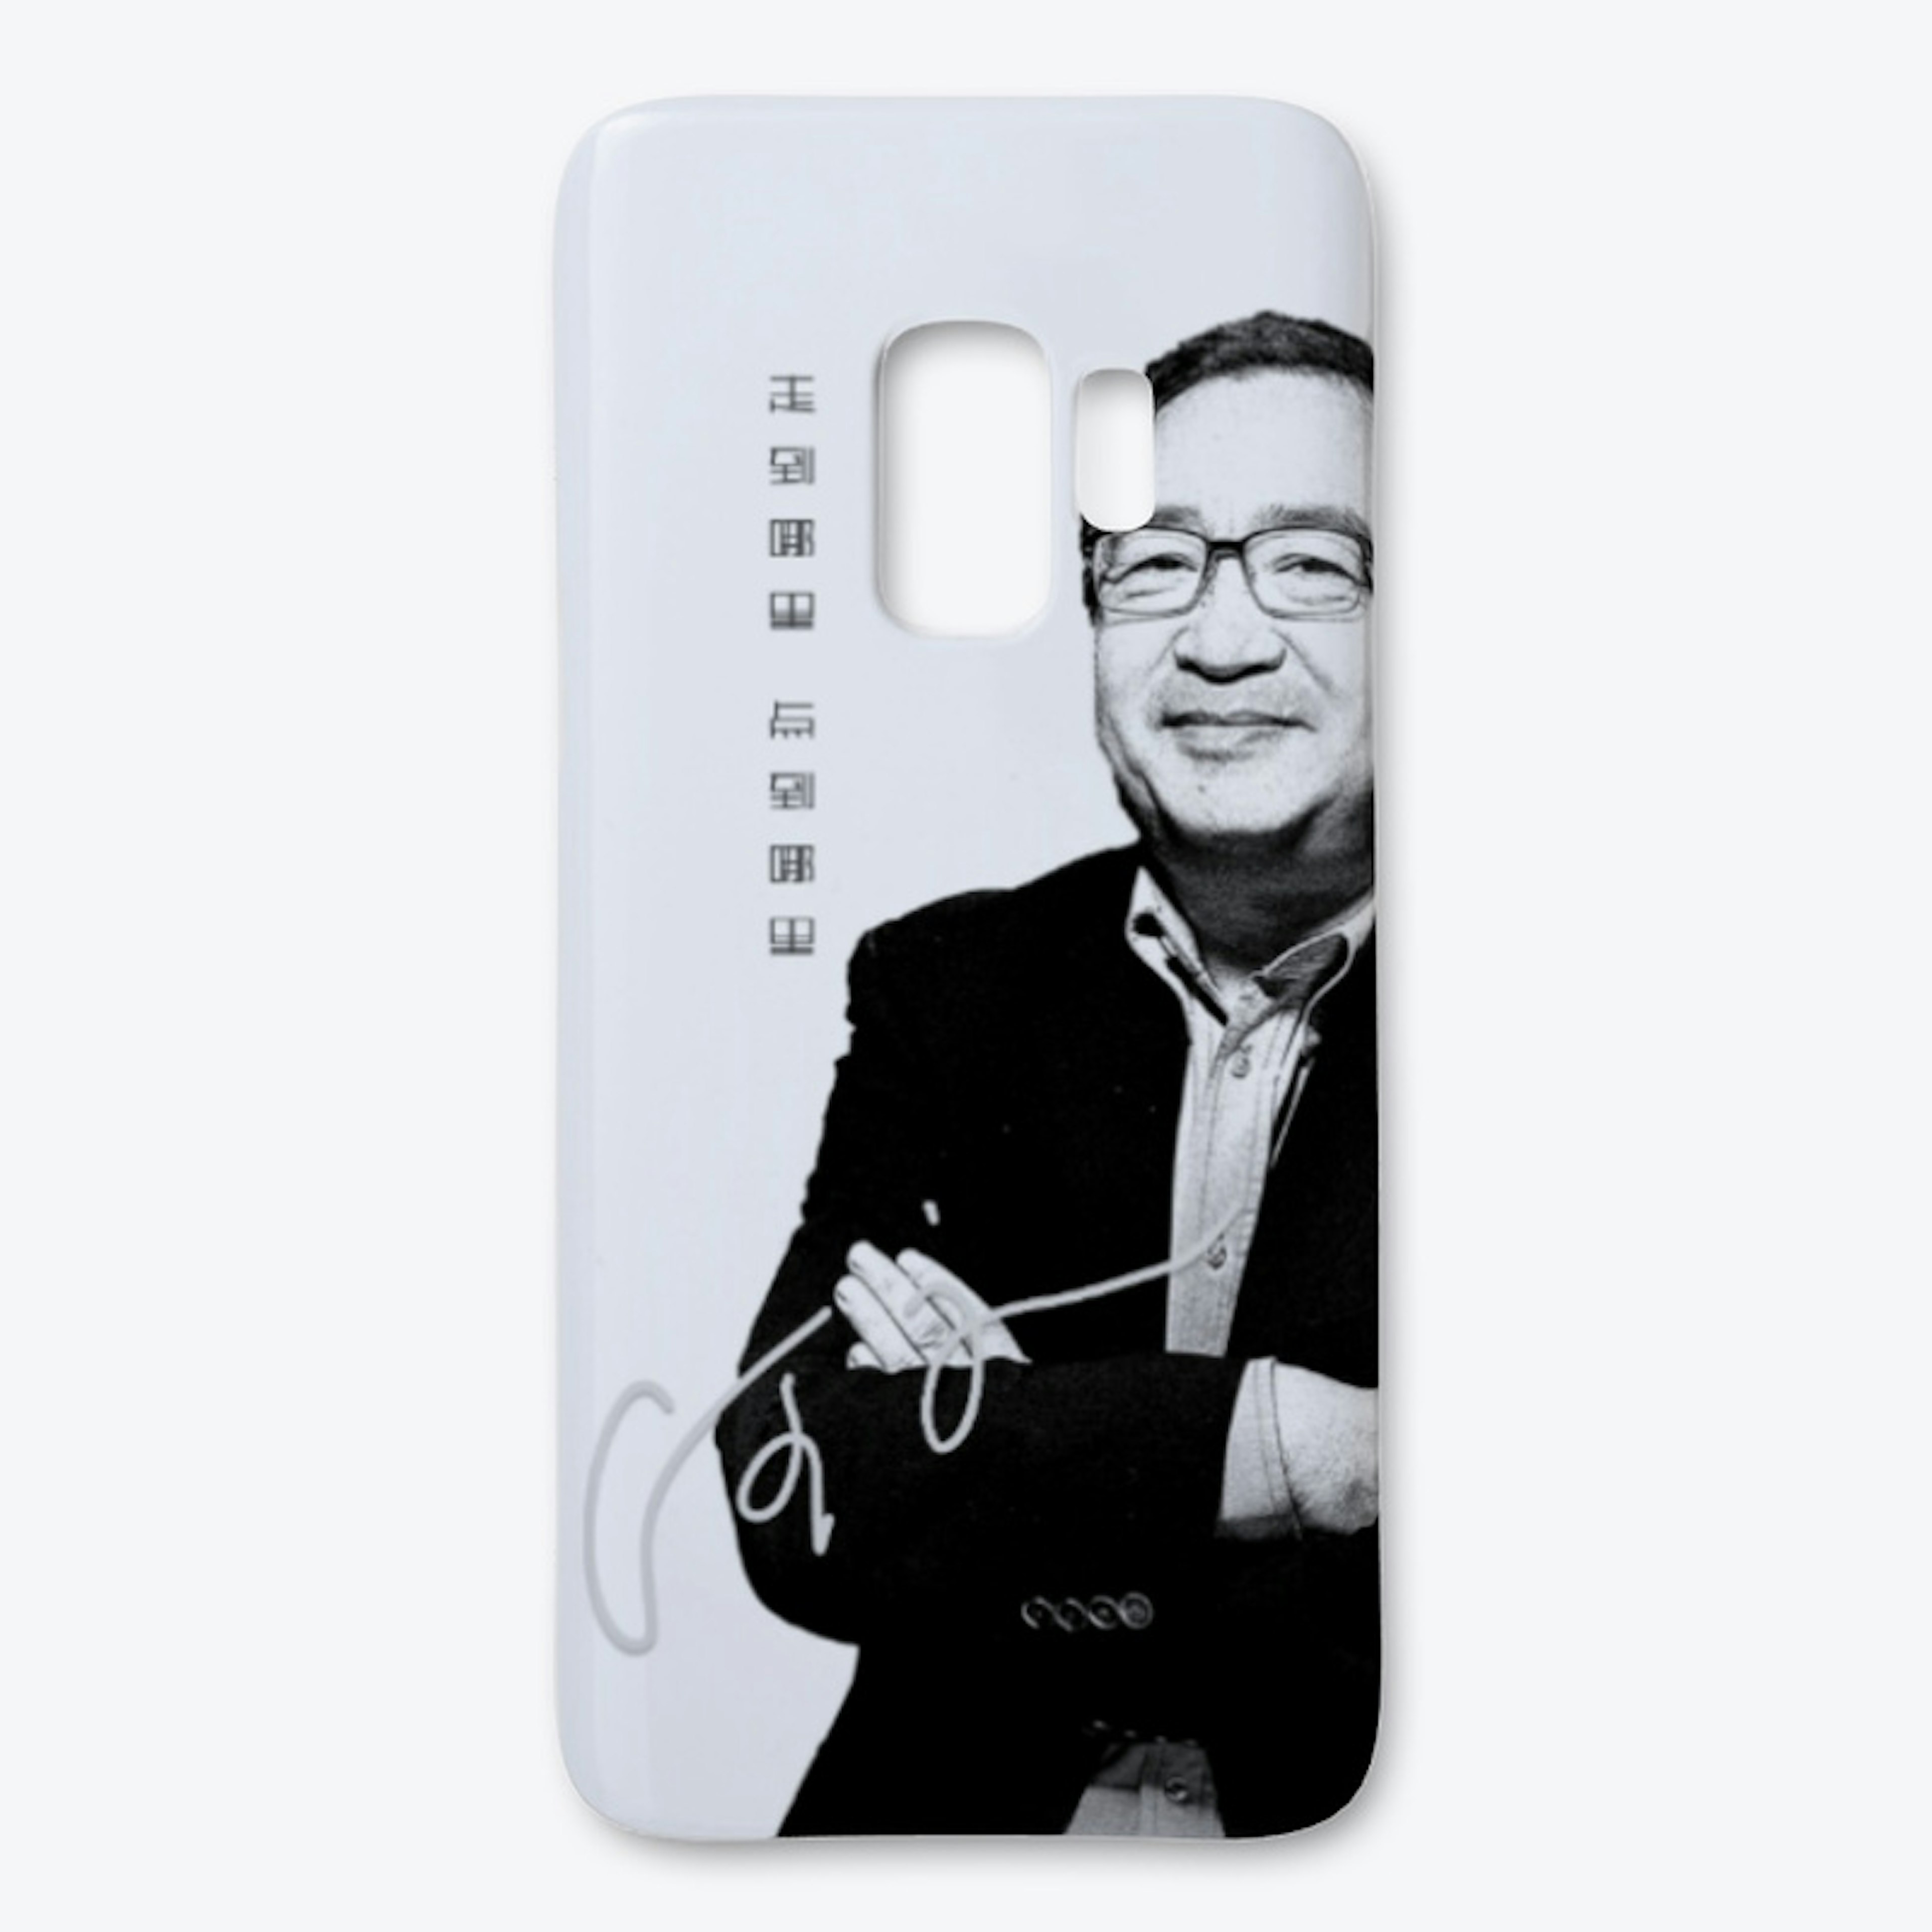 mingjing logo phone case 8